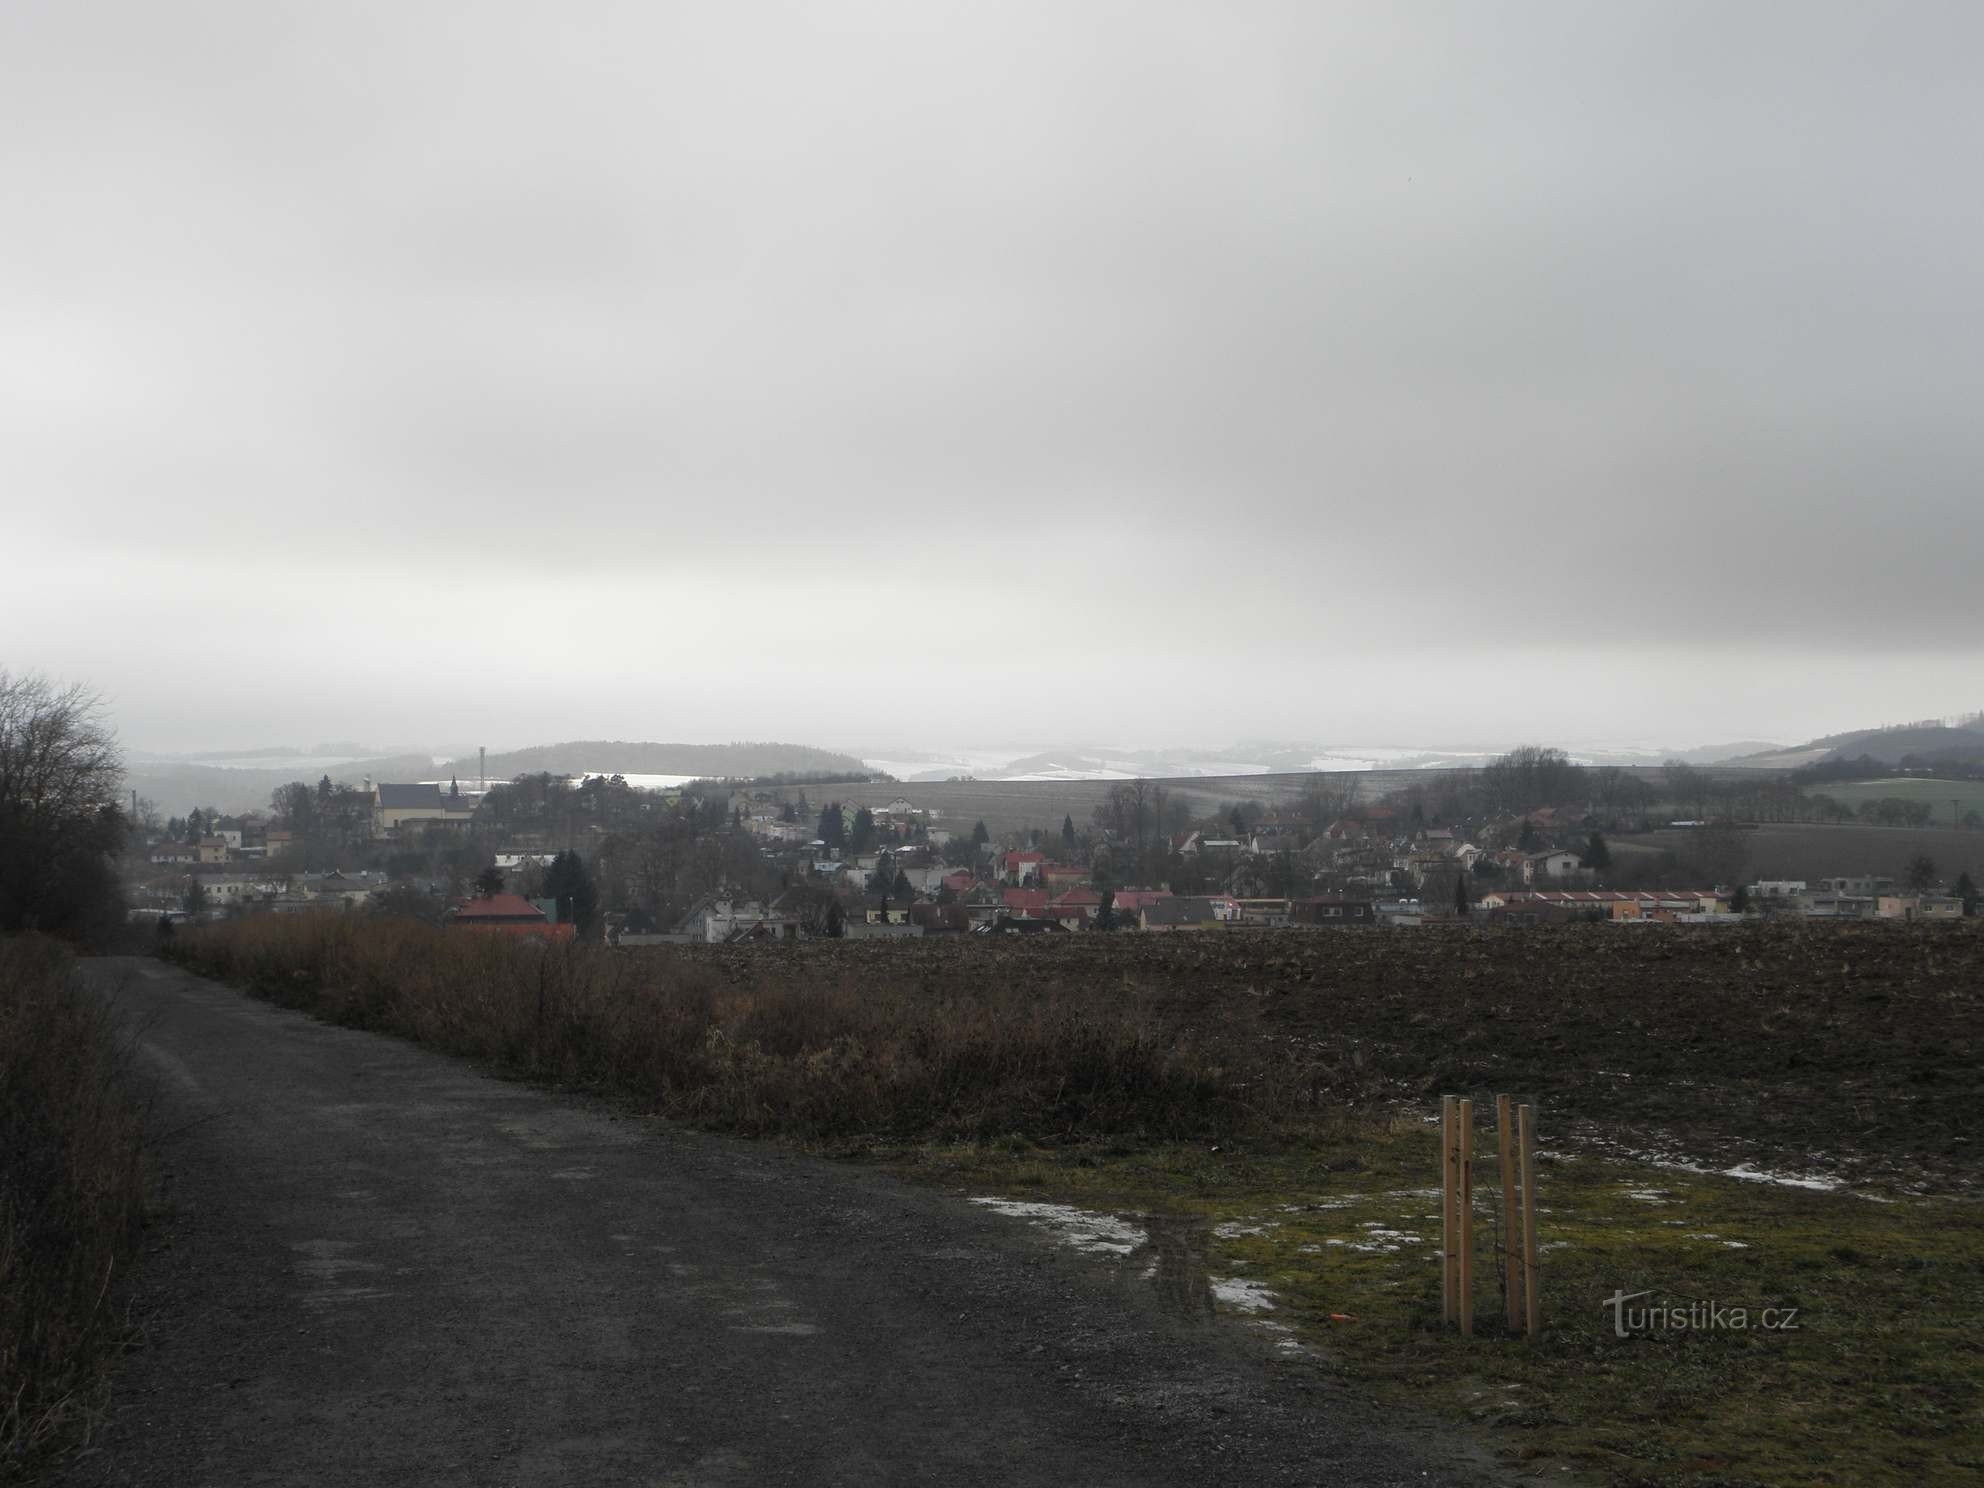 Partea de nord a Fulnek cu fosta mănăstire augustiniană de la cruce - 1.1.2012